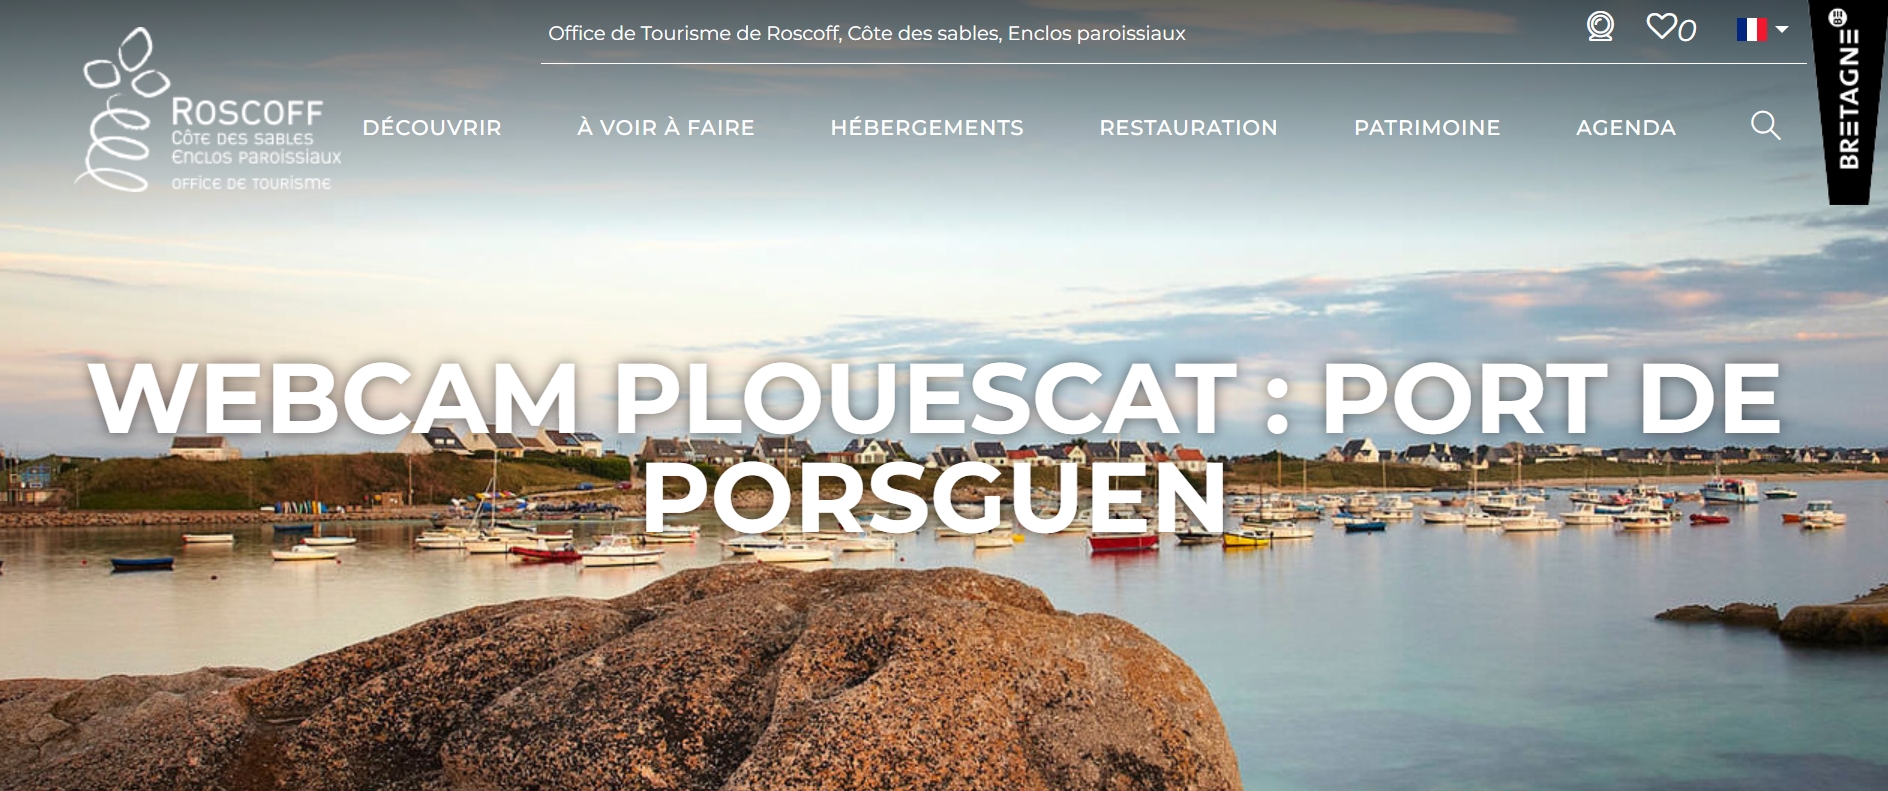 Plouescat - Port de Porsguen...